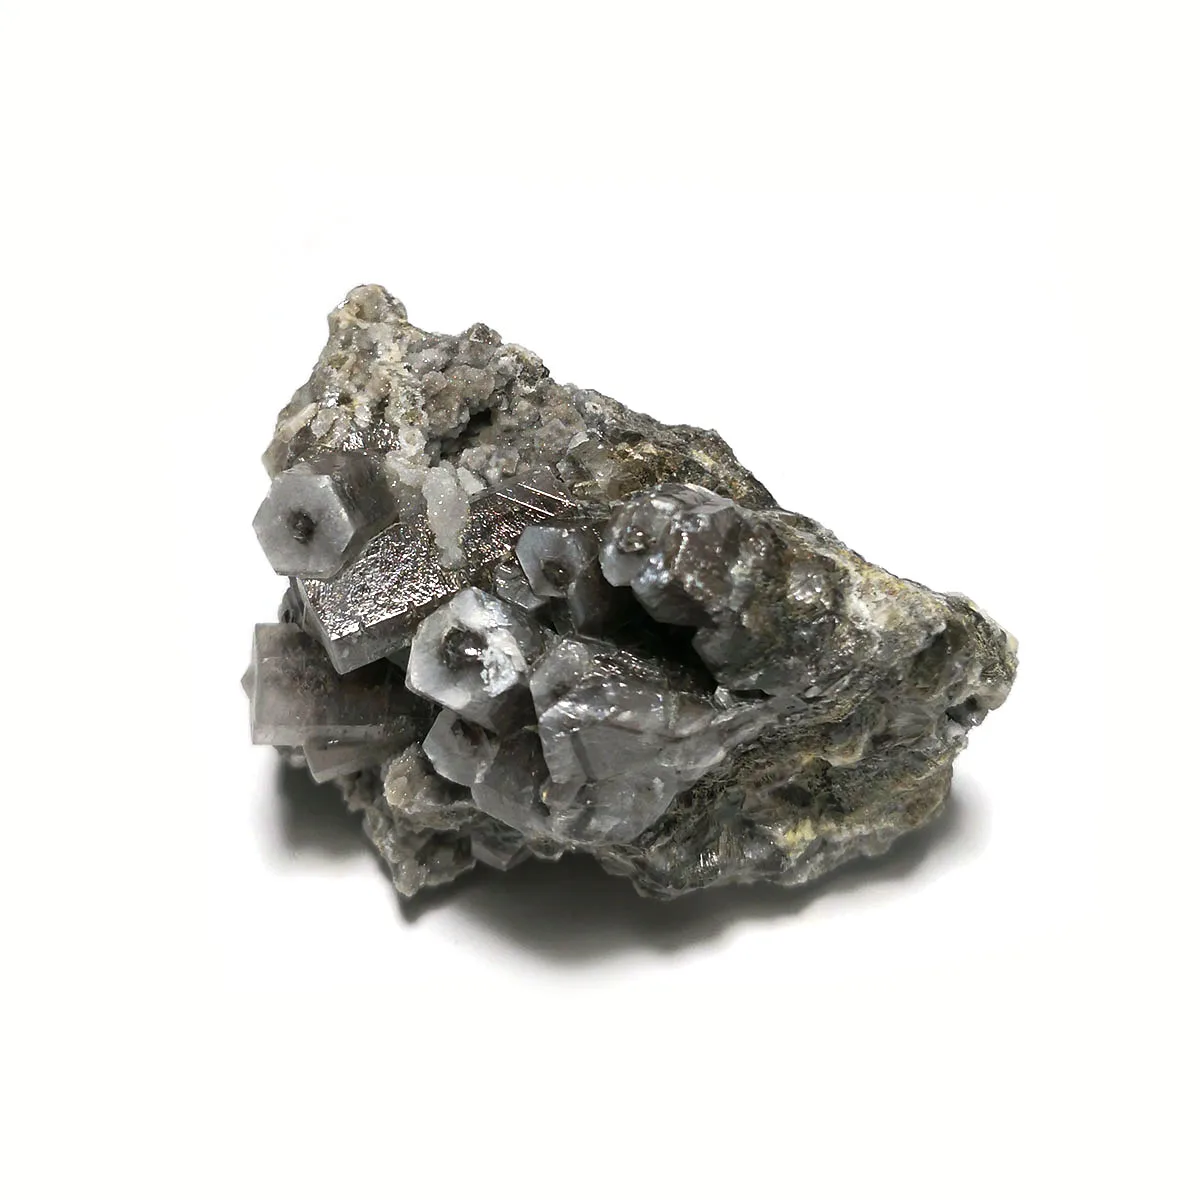 173g A3-1 Natural Calcita Mineral Cristal de Quartzo Amostra Ornamentos Colecionáveis Presentes Ornamentos Da Província de Fujian China